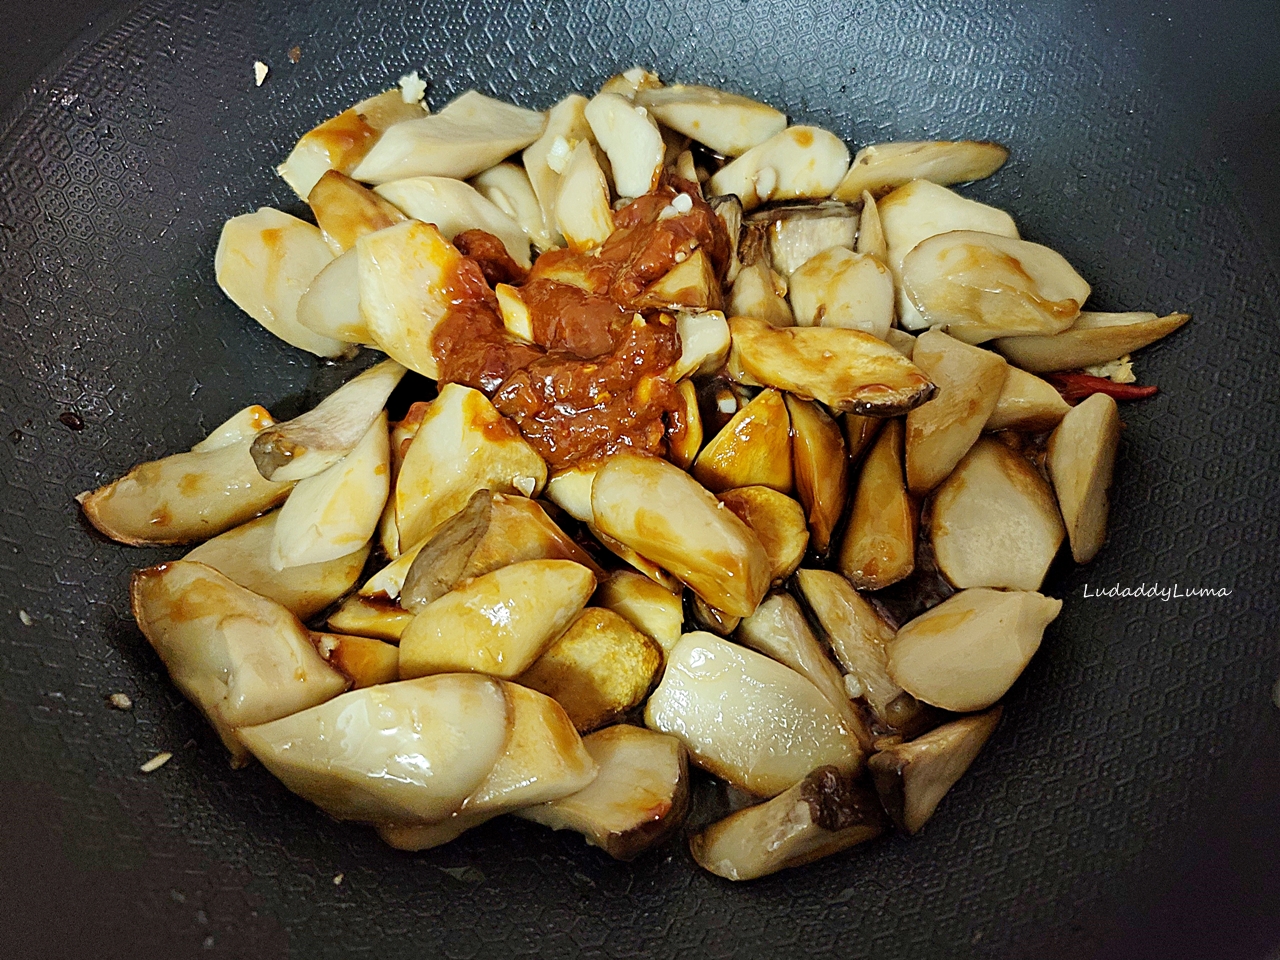 【食譜】醬燒杏鮑菇/一訣竅讓杏鮑菇醬香入味且口感Q勁